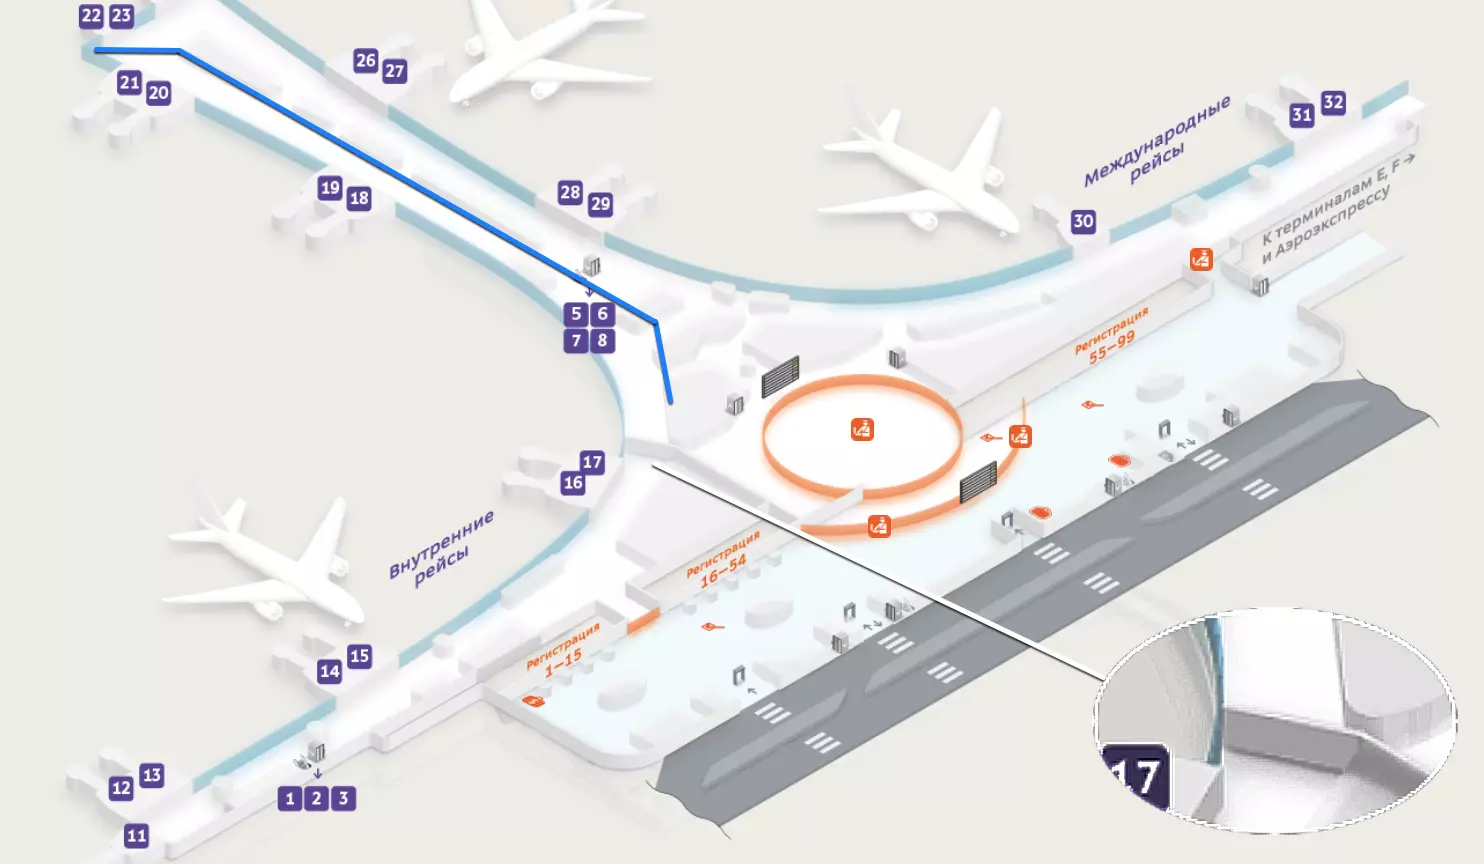 Шереметьево: схема всех терминалов аэропорта | live to travel